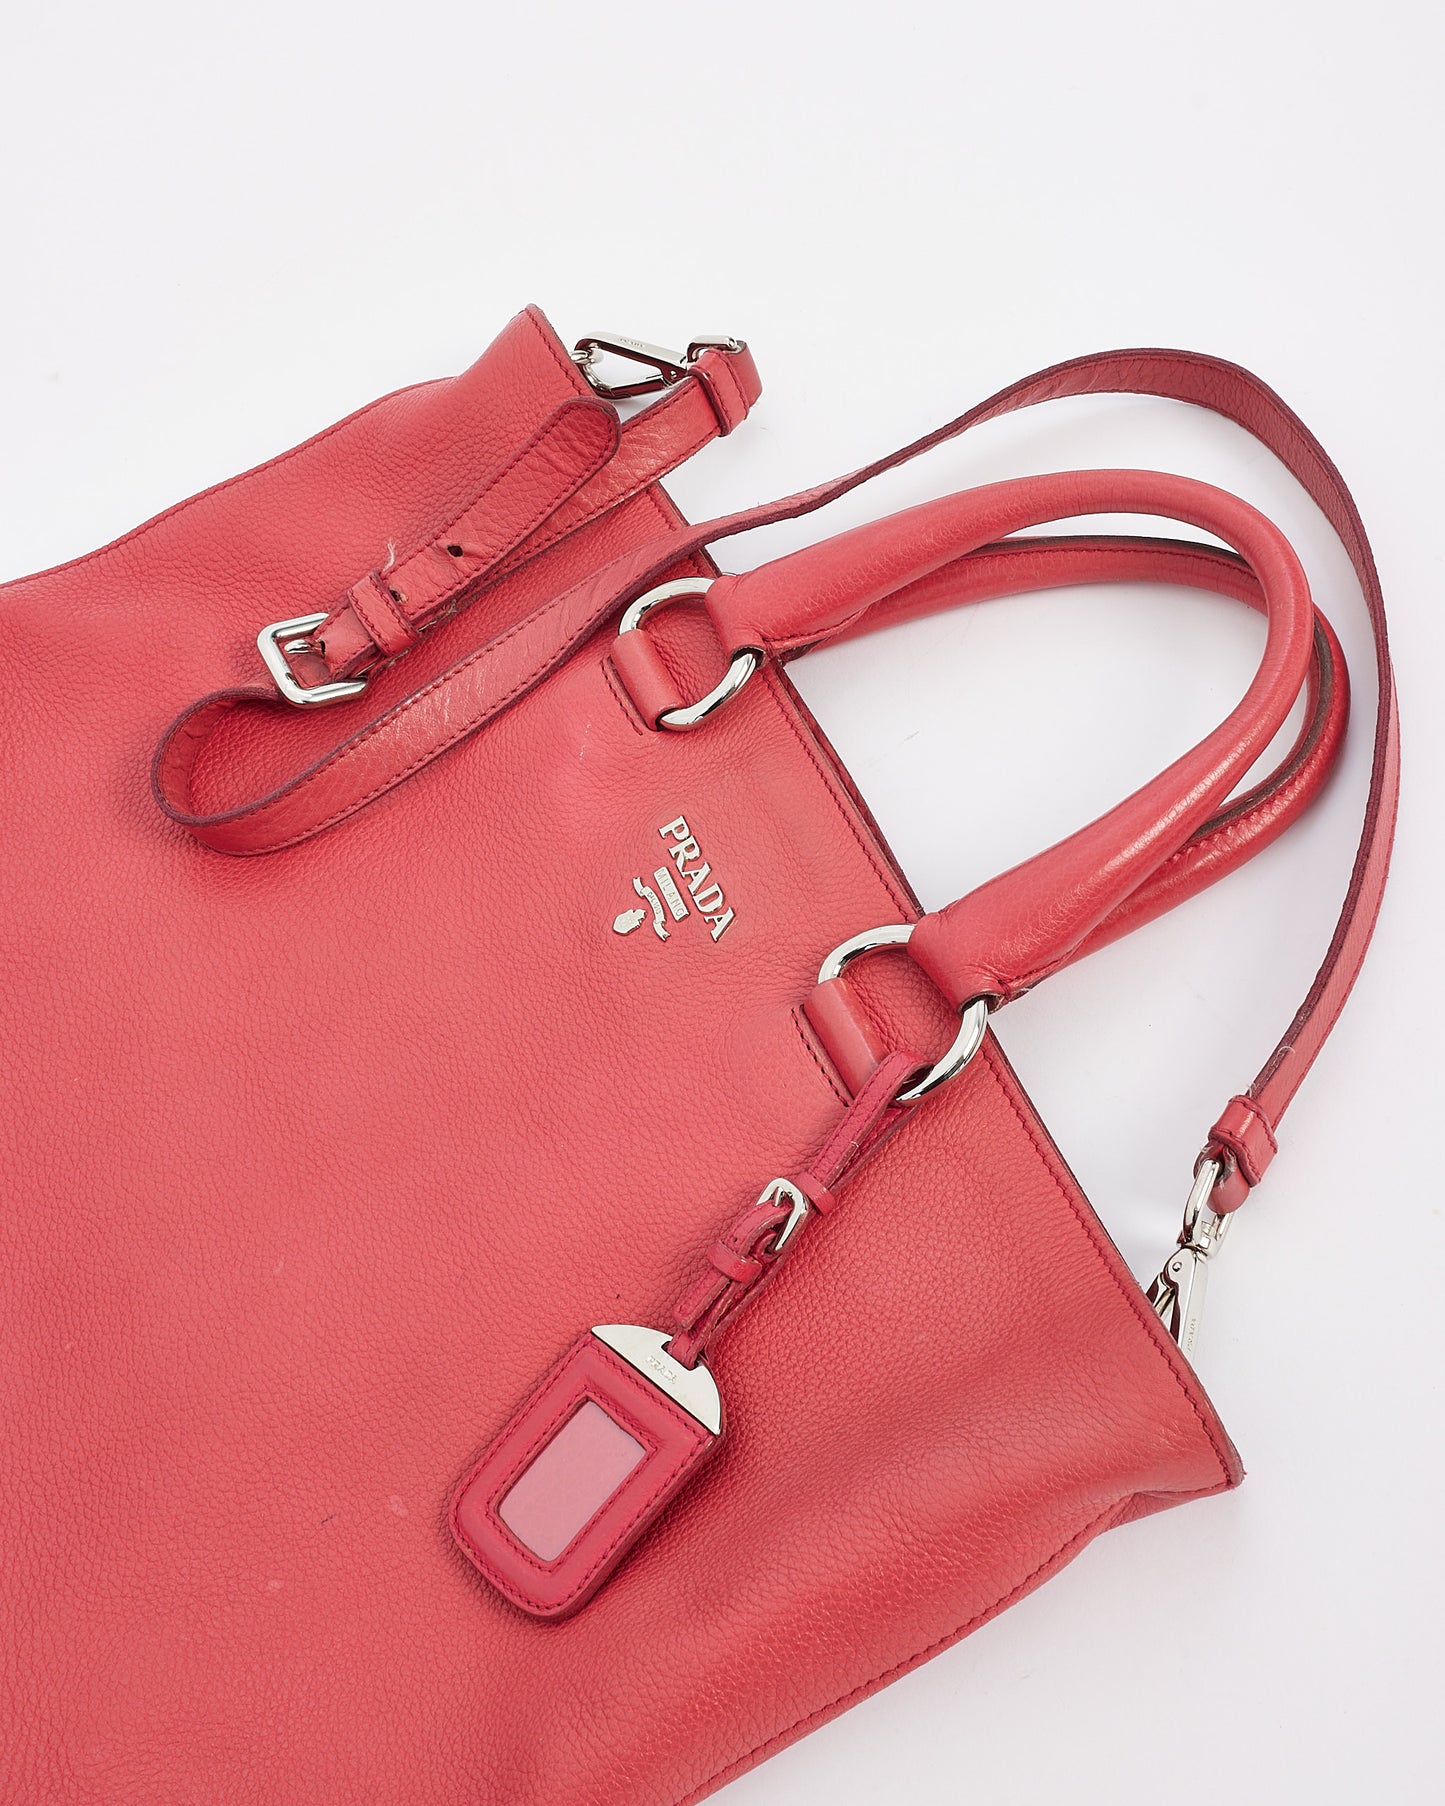 Grand sac cabas convertible Daino en cuir rouge rose Prada